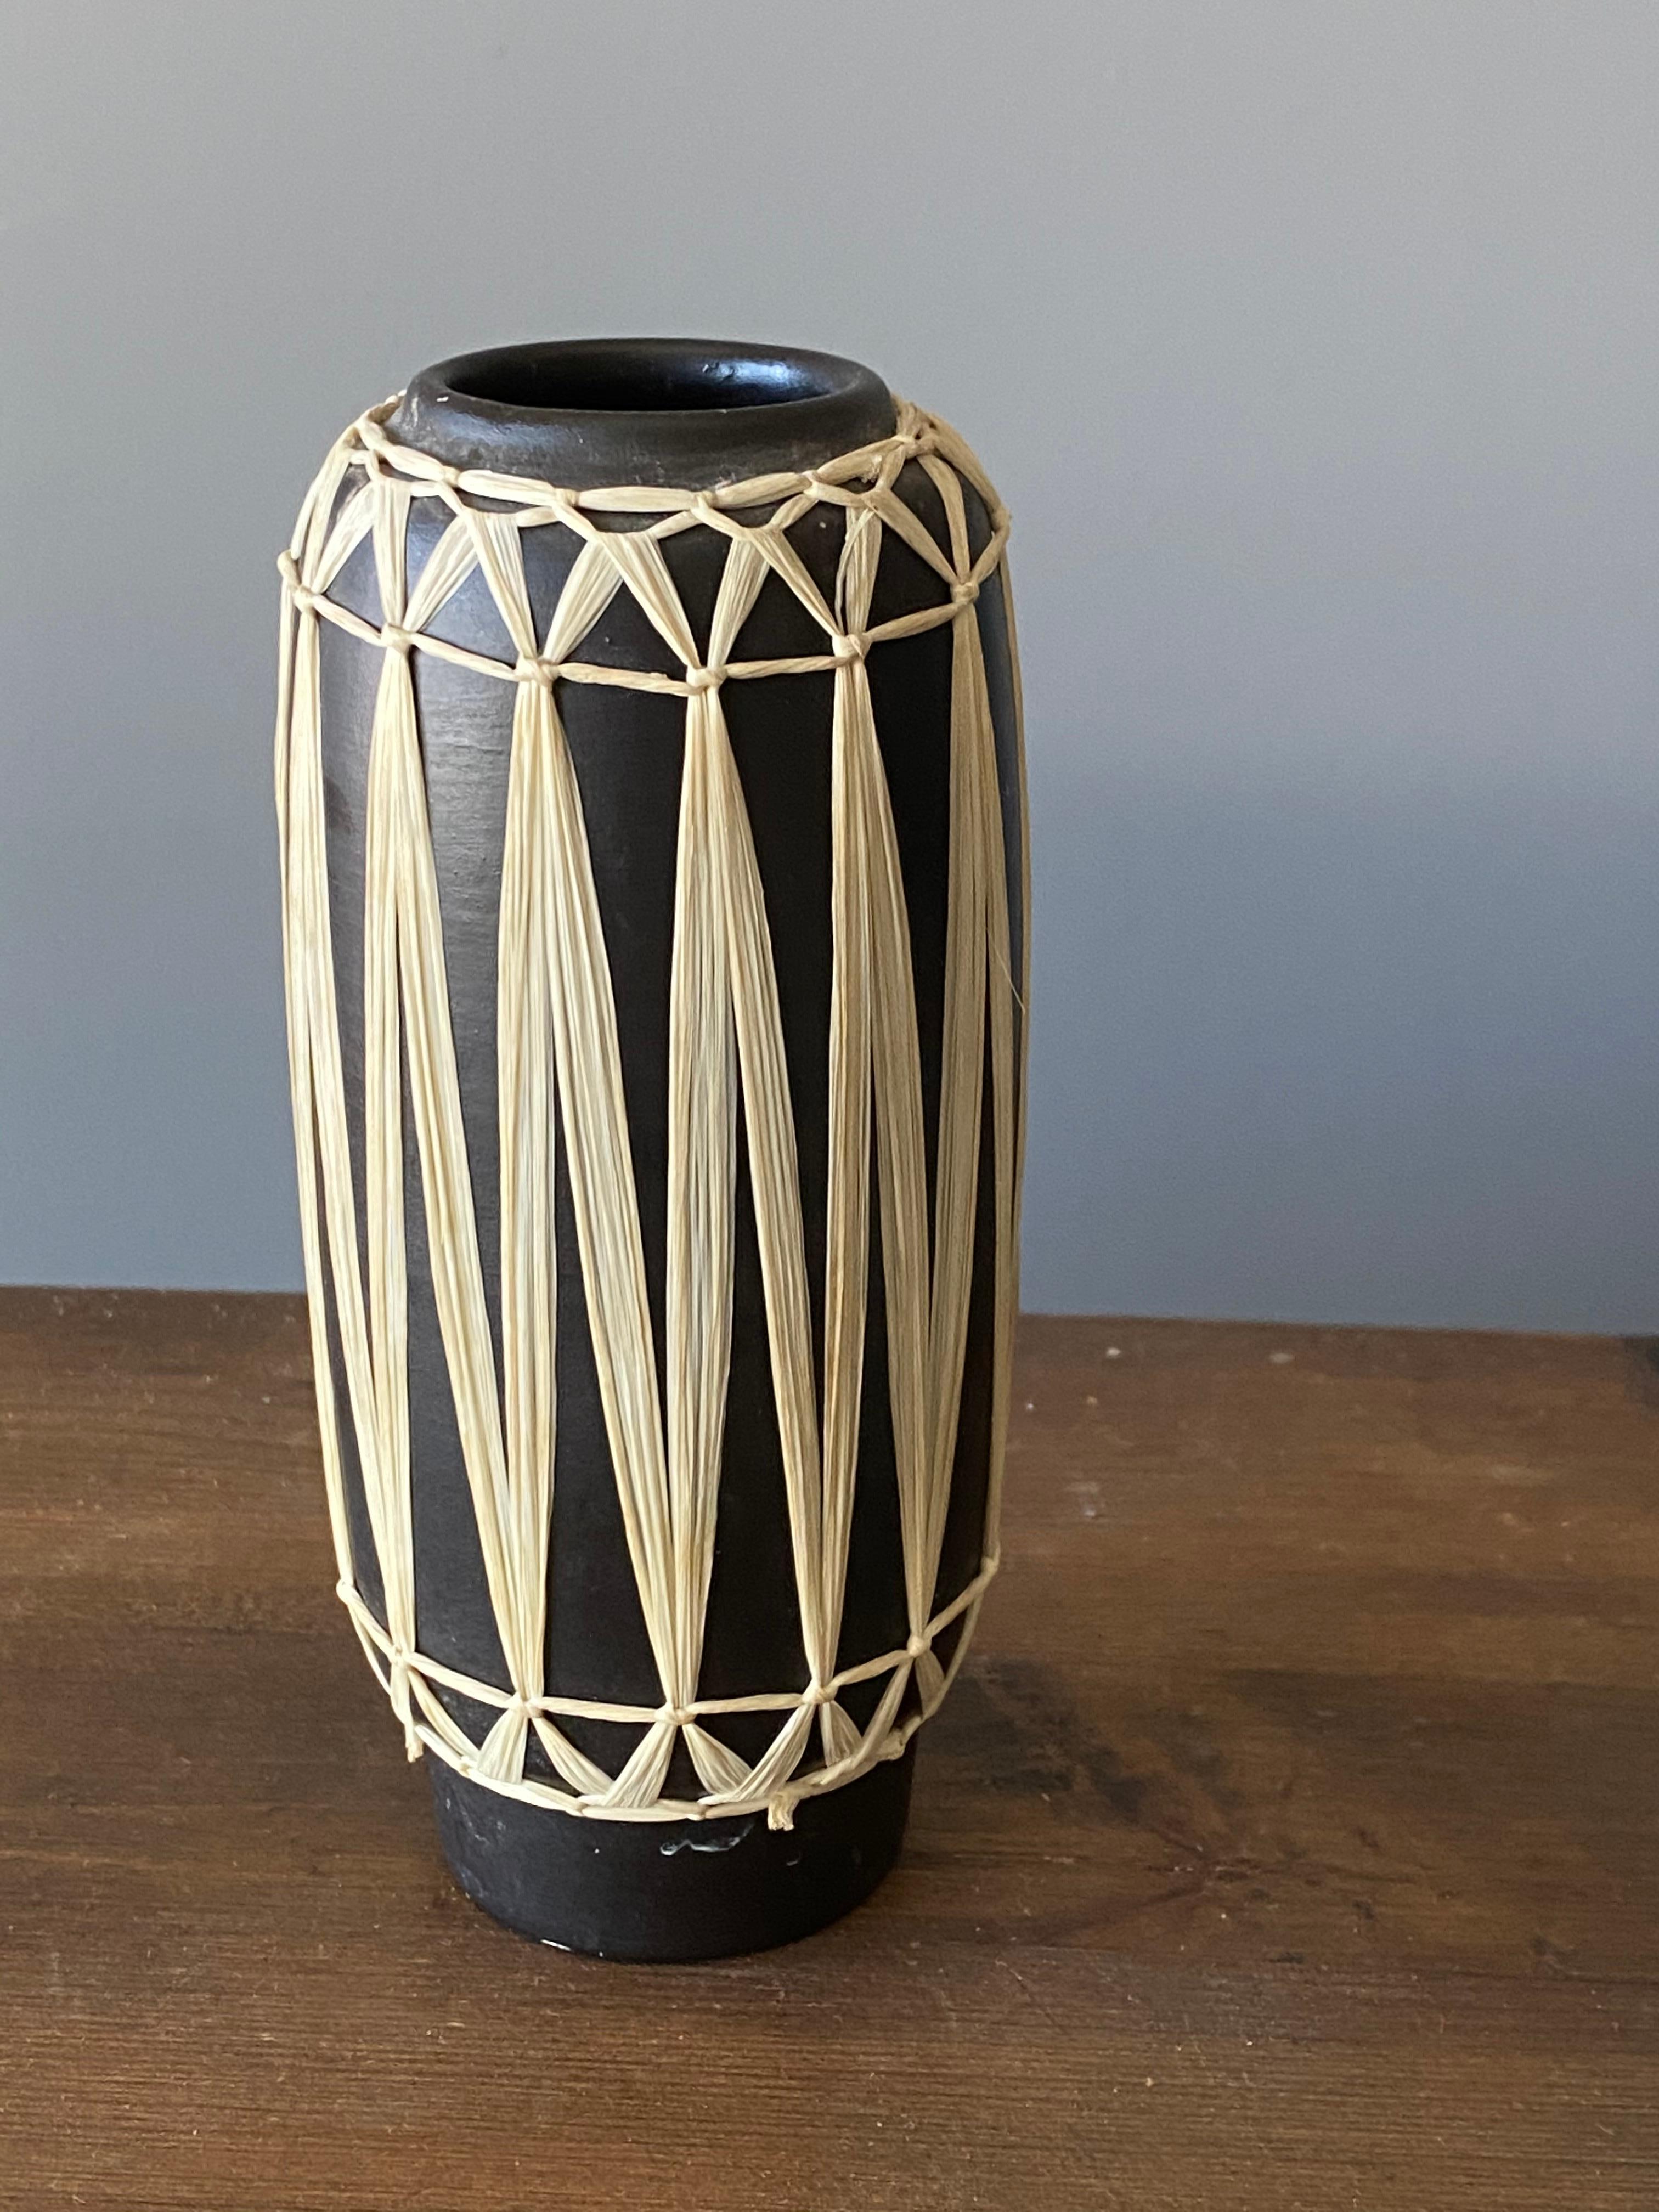 Austrian Gmundner Keramik, Vases, Black-Painted Stoneware, Raffia, Austria, 1950s